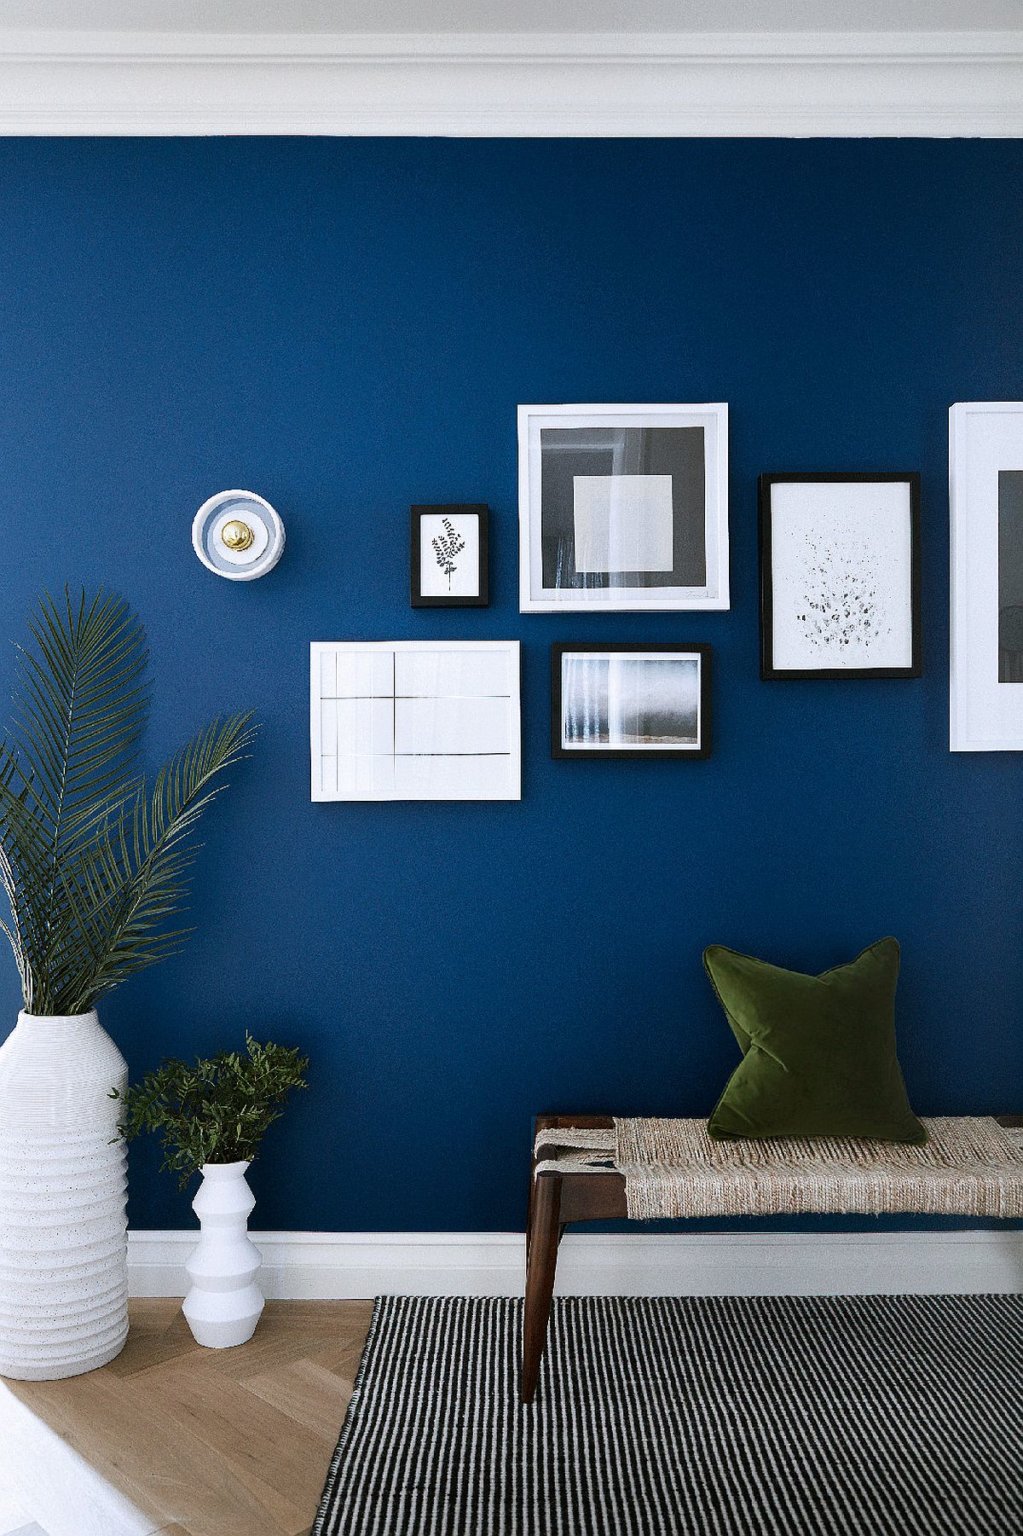 hình ảnh góc phòng khách với mảng tường màu xanh lam đậm - màu sắc trang trí nhà mùa đông